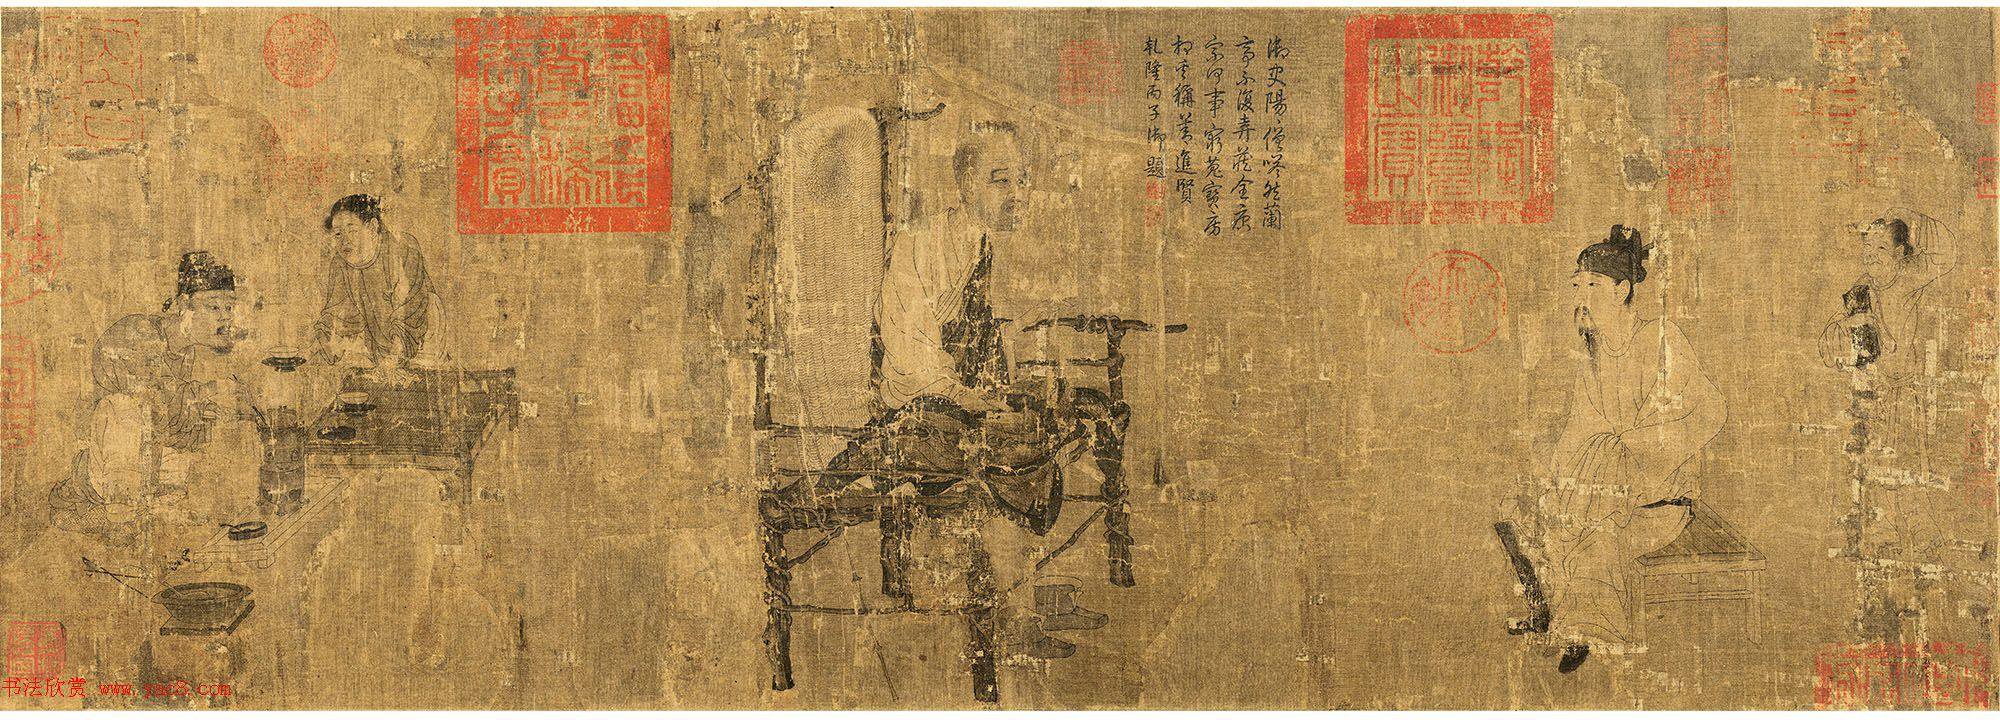 唐代畫家閻立本〈蕭翼賺蘭亭圖〉的宋代摹本，現藏於遼寧省博物館（網上圖片）